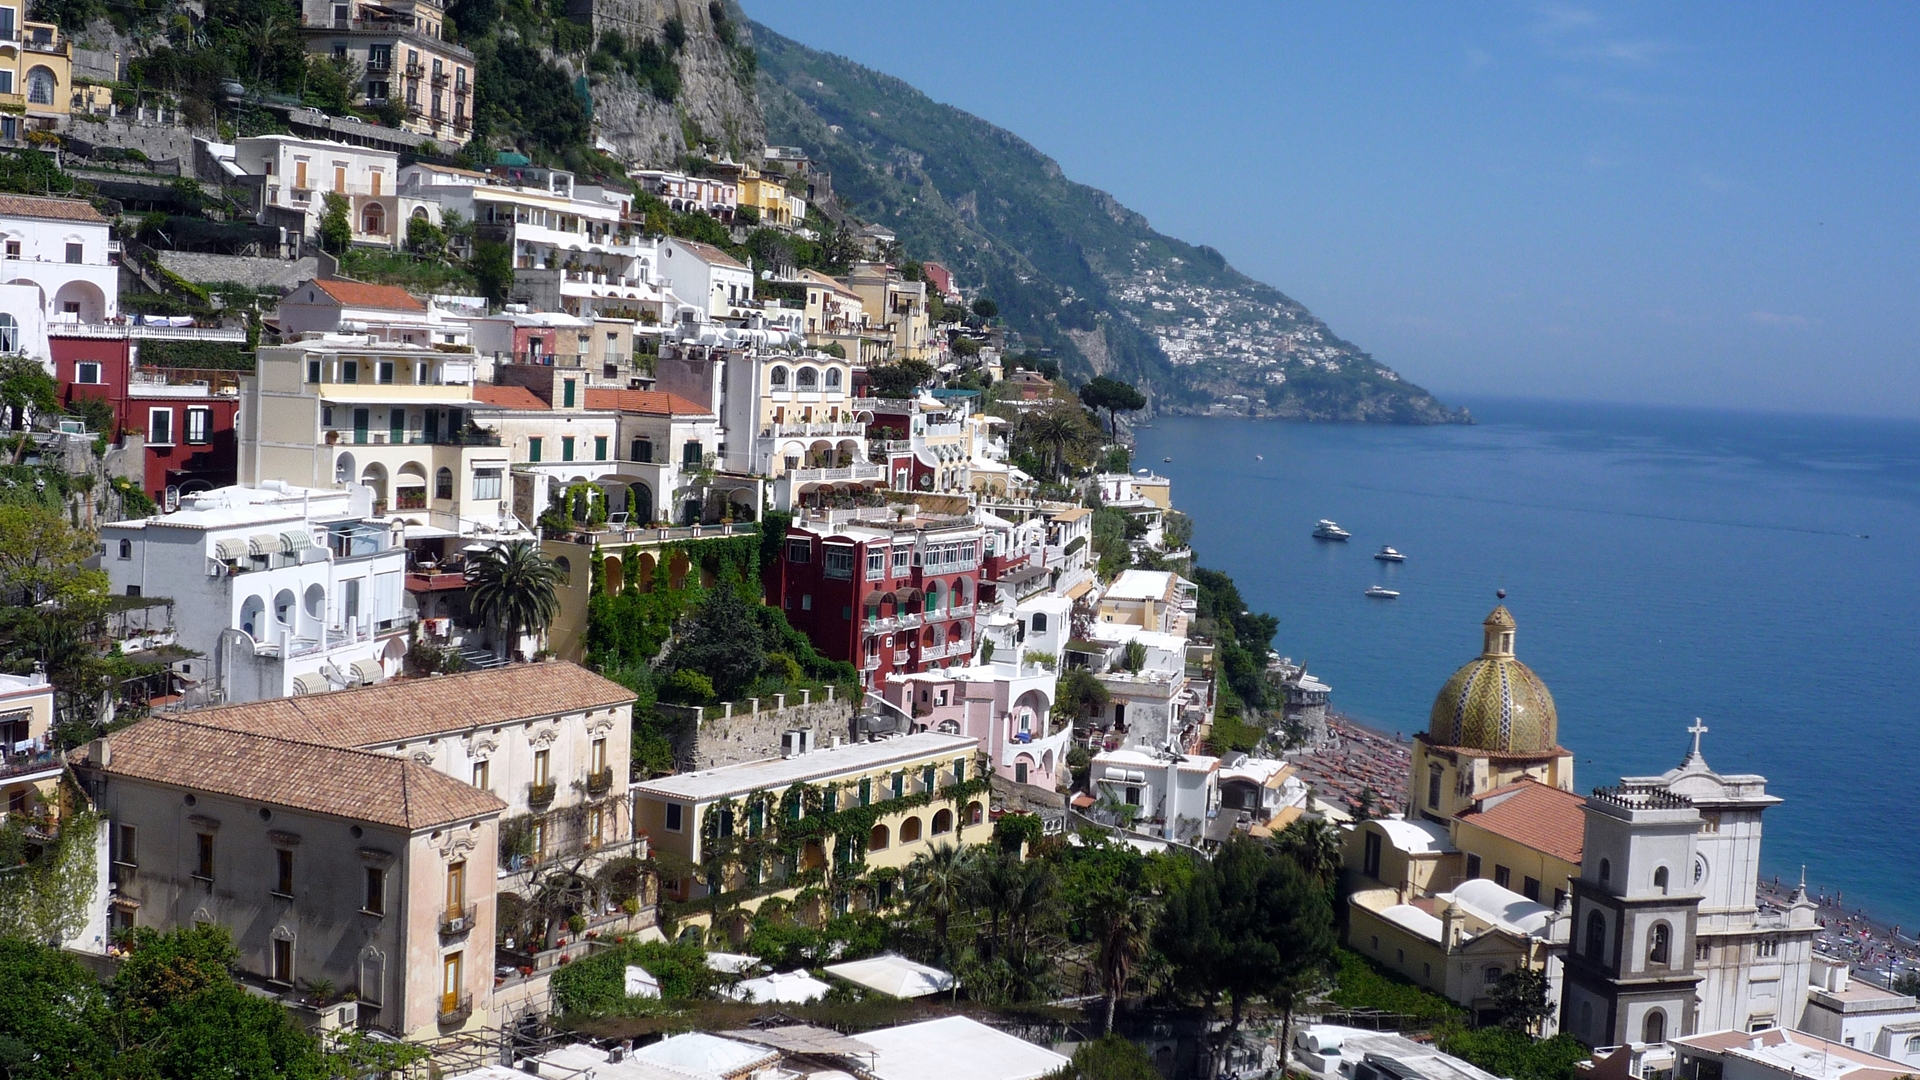 Italy, Positano - Amalfi Coast , HD Wallpaper & Backgrounds